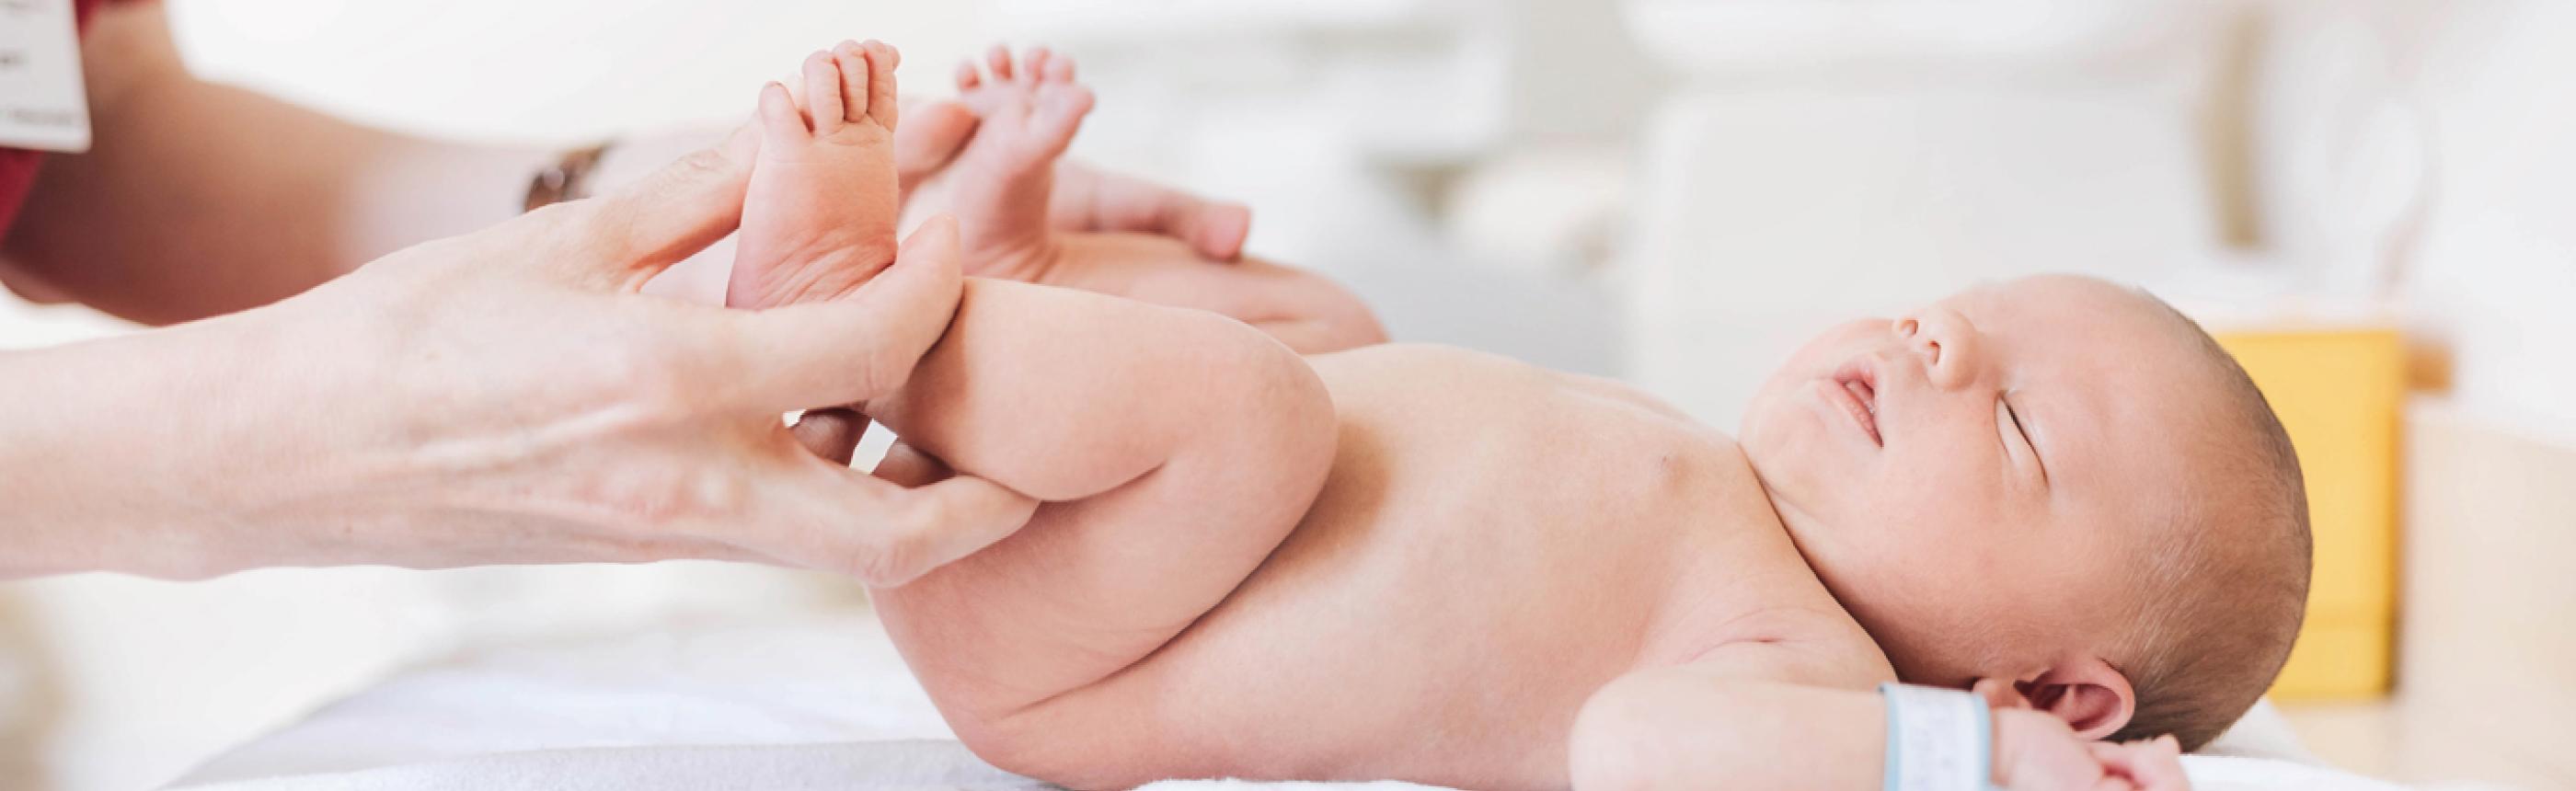 Geburtshilfe Untersuchung Neugeborenes